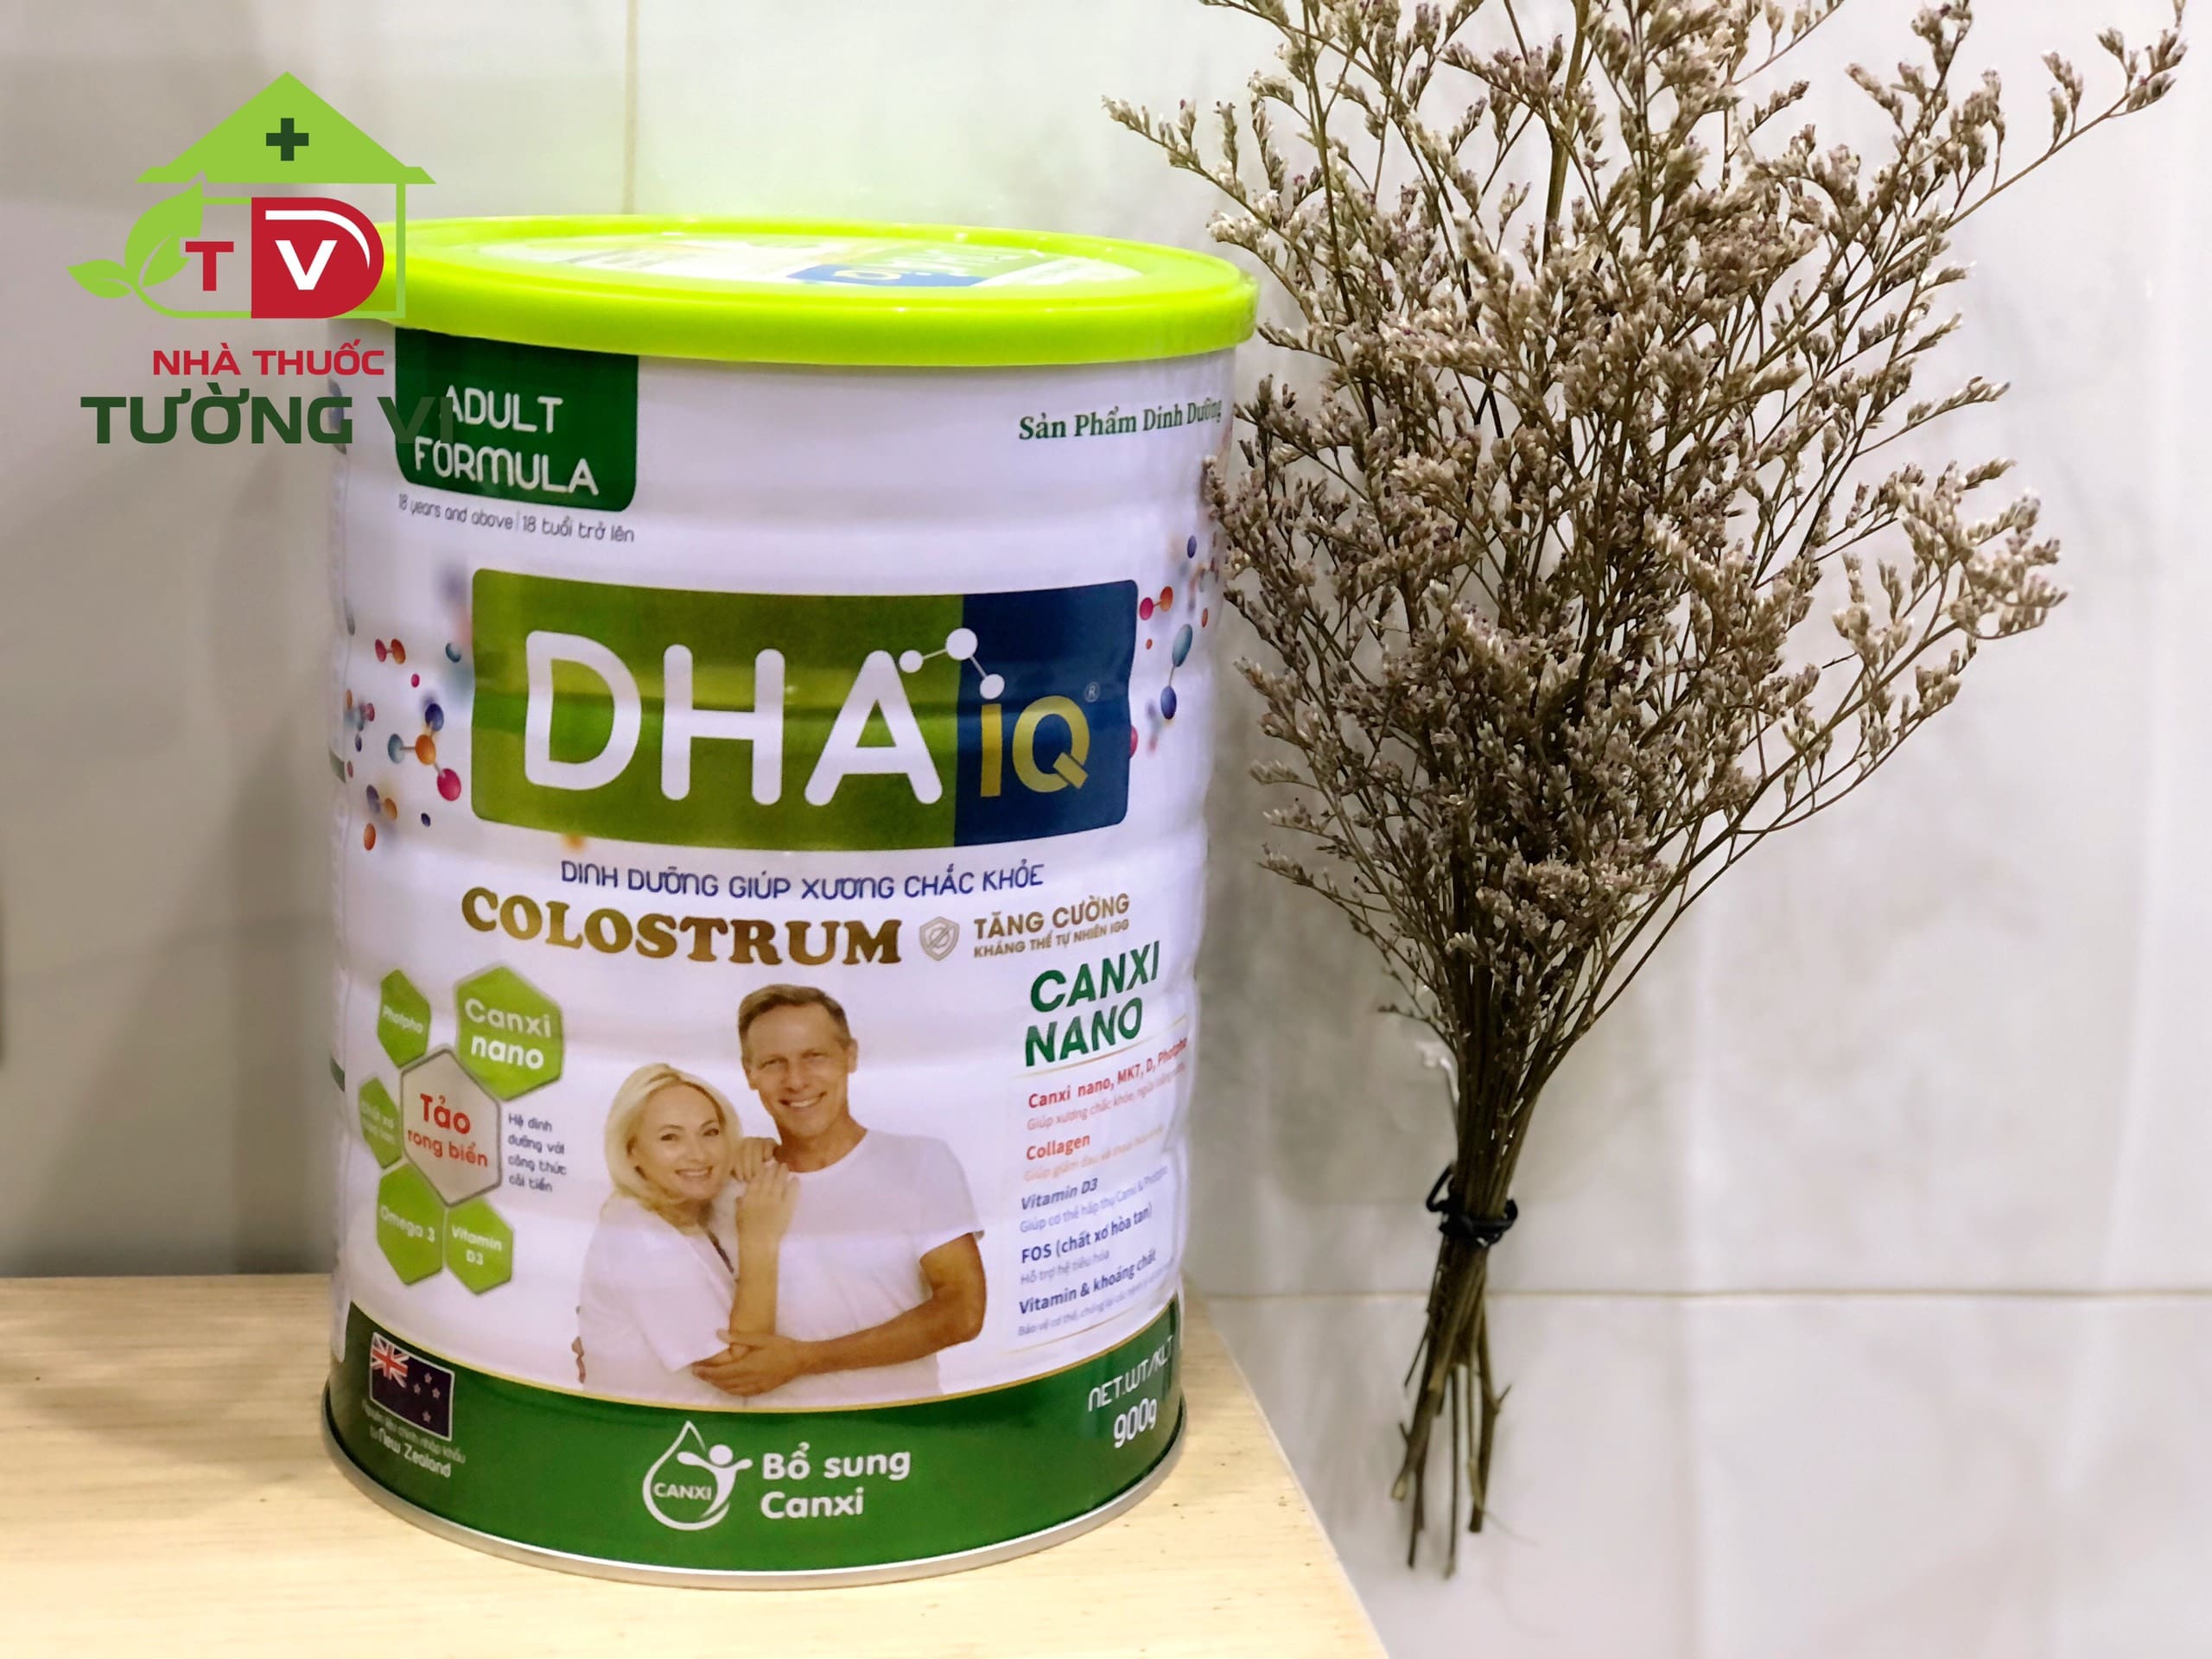 Sữa DHA IQ Canxi Nano - Sản phẩm dinh dưỡng giúp xương chắc khỏe dành cho người từ 18 tuổi trở lên